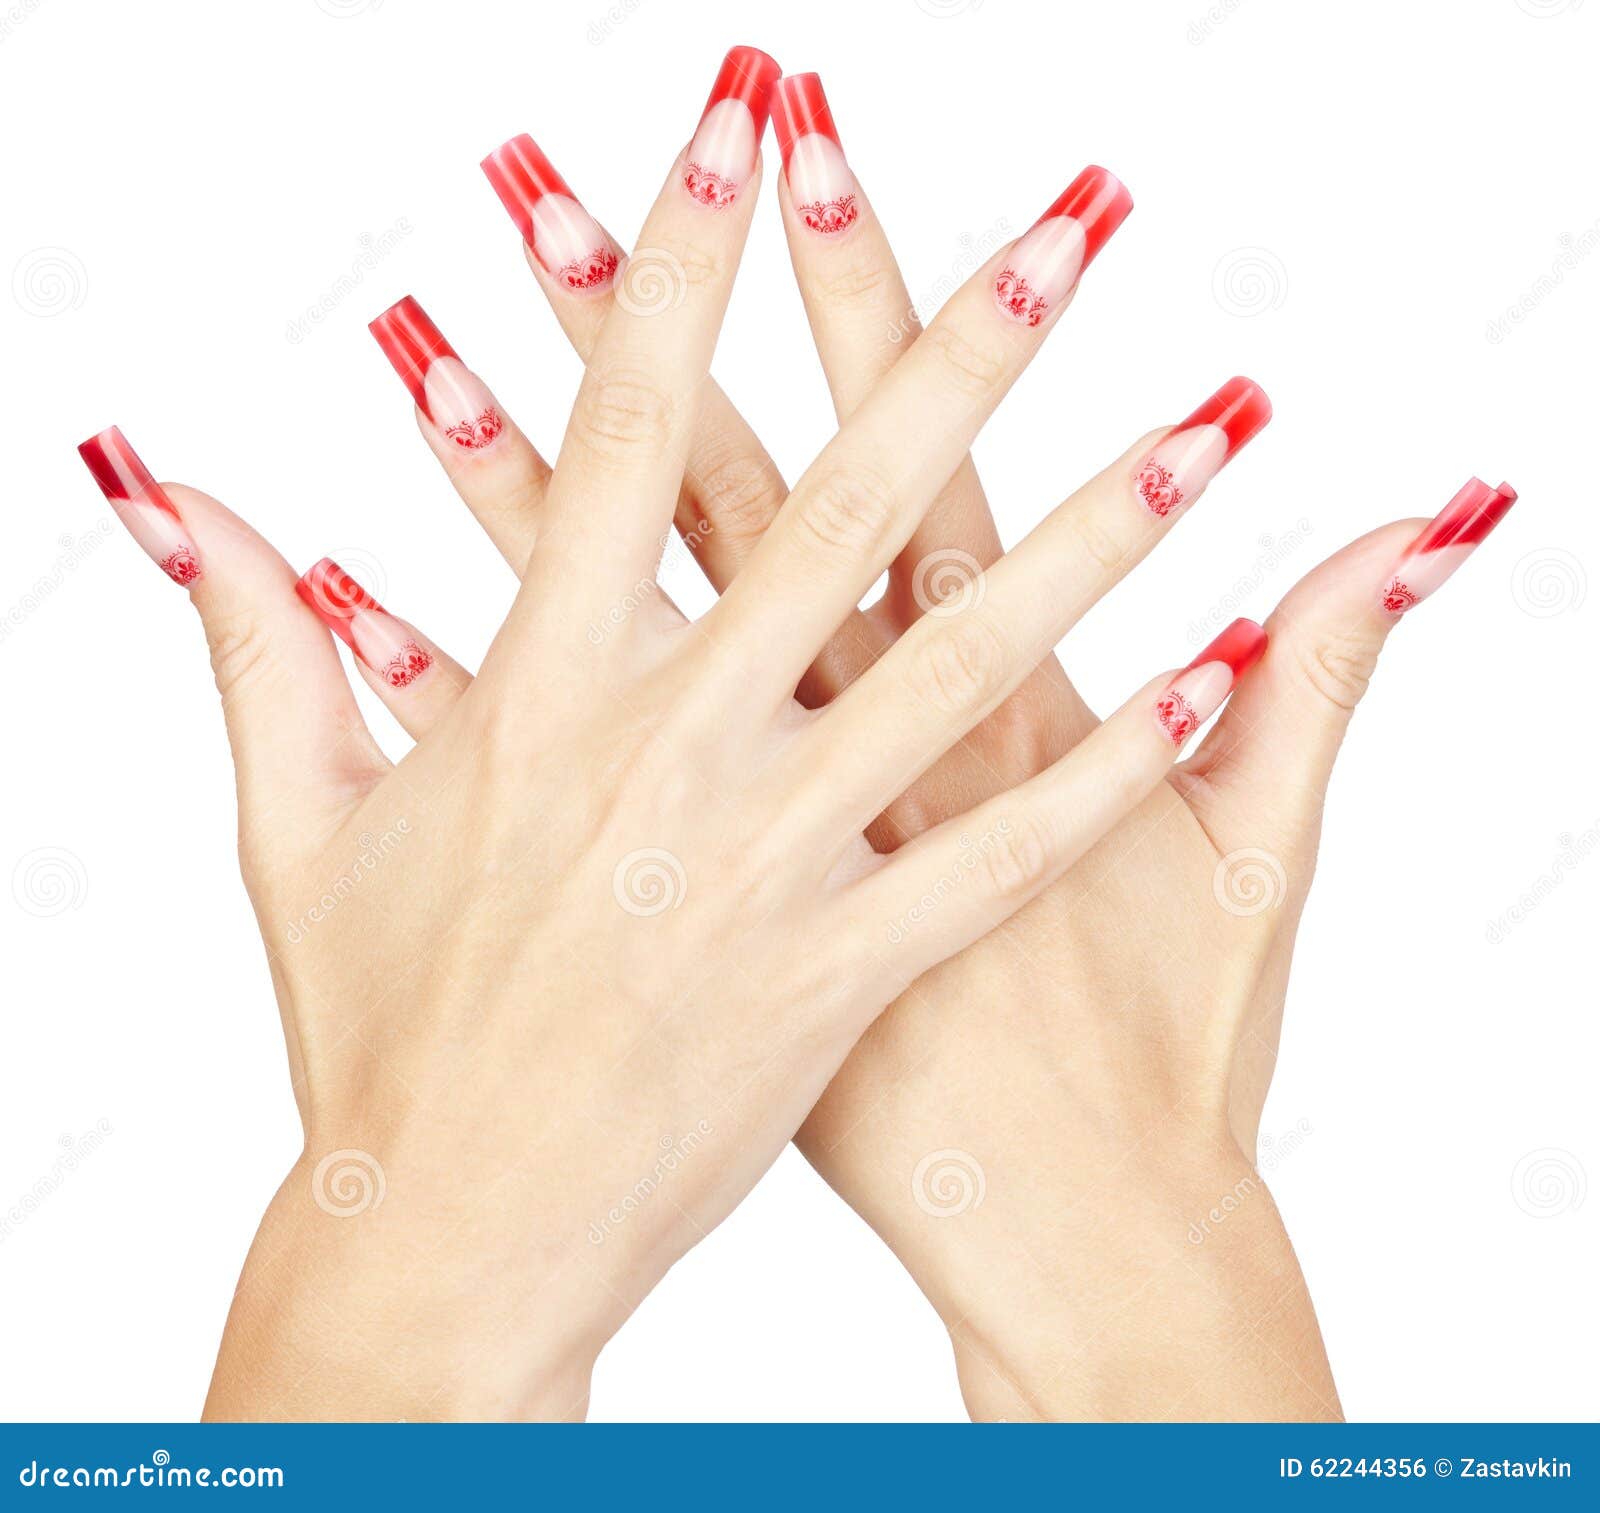 acrylic nails manicure